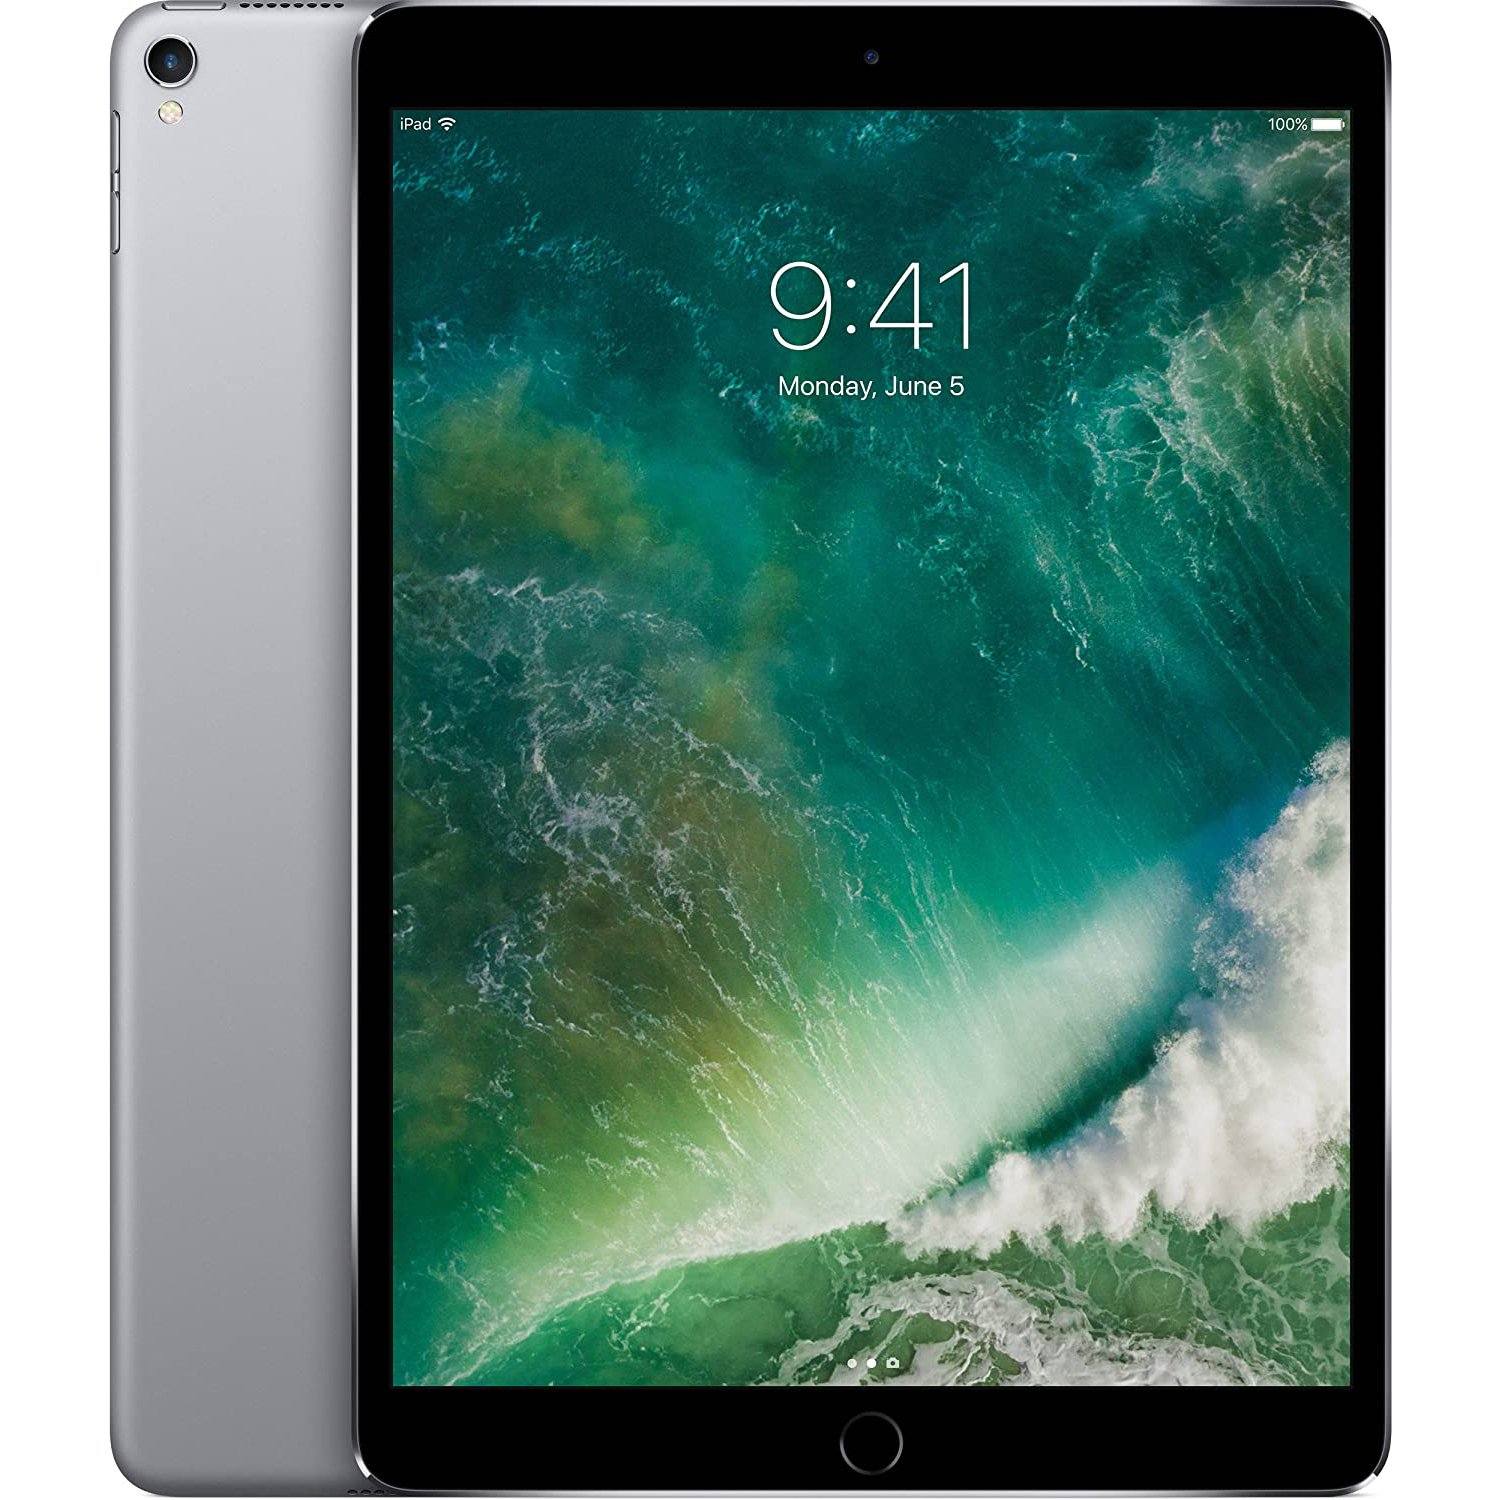 Để tiết kiệm chi phí nhưng vẫn có thể sở hữu một chiếc iPad Pro đầy đủ tính năng, bạn có thể lựa chọn mua iPad Pro WiFi Refurbished. Đây là sản phẩm đã được bảo dưỡng kỹ càng và trang bị các chức năng hoàn chỉnh giống như một chiếc iPad Pro mới.